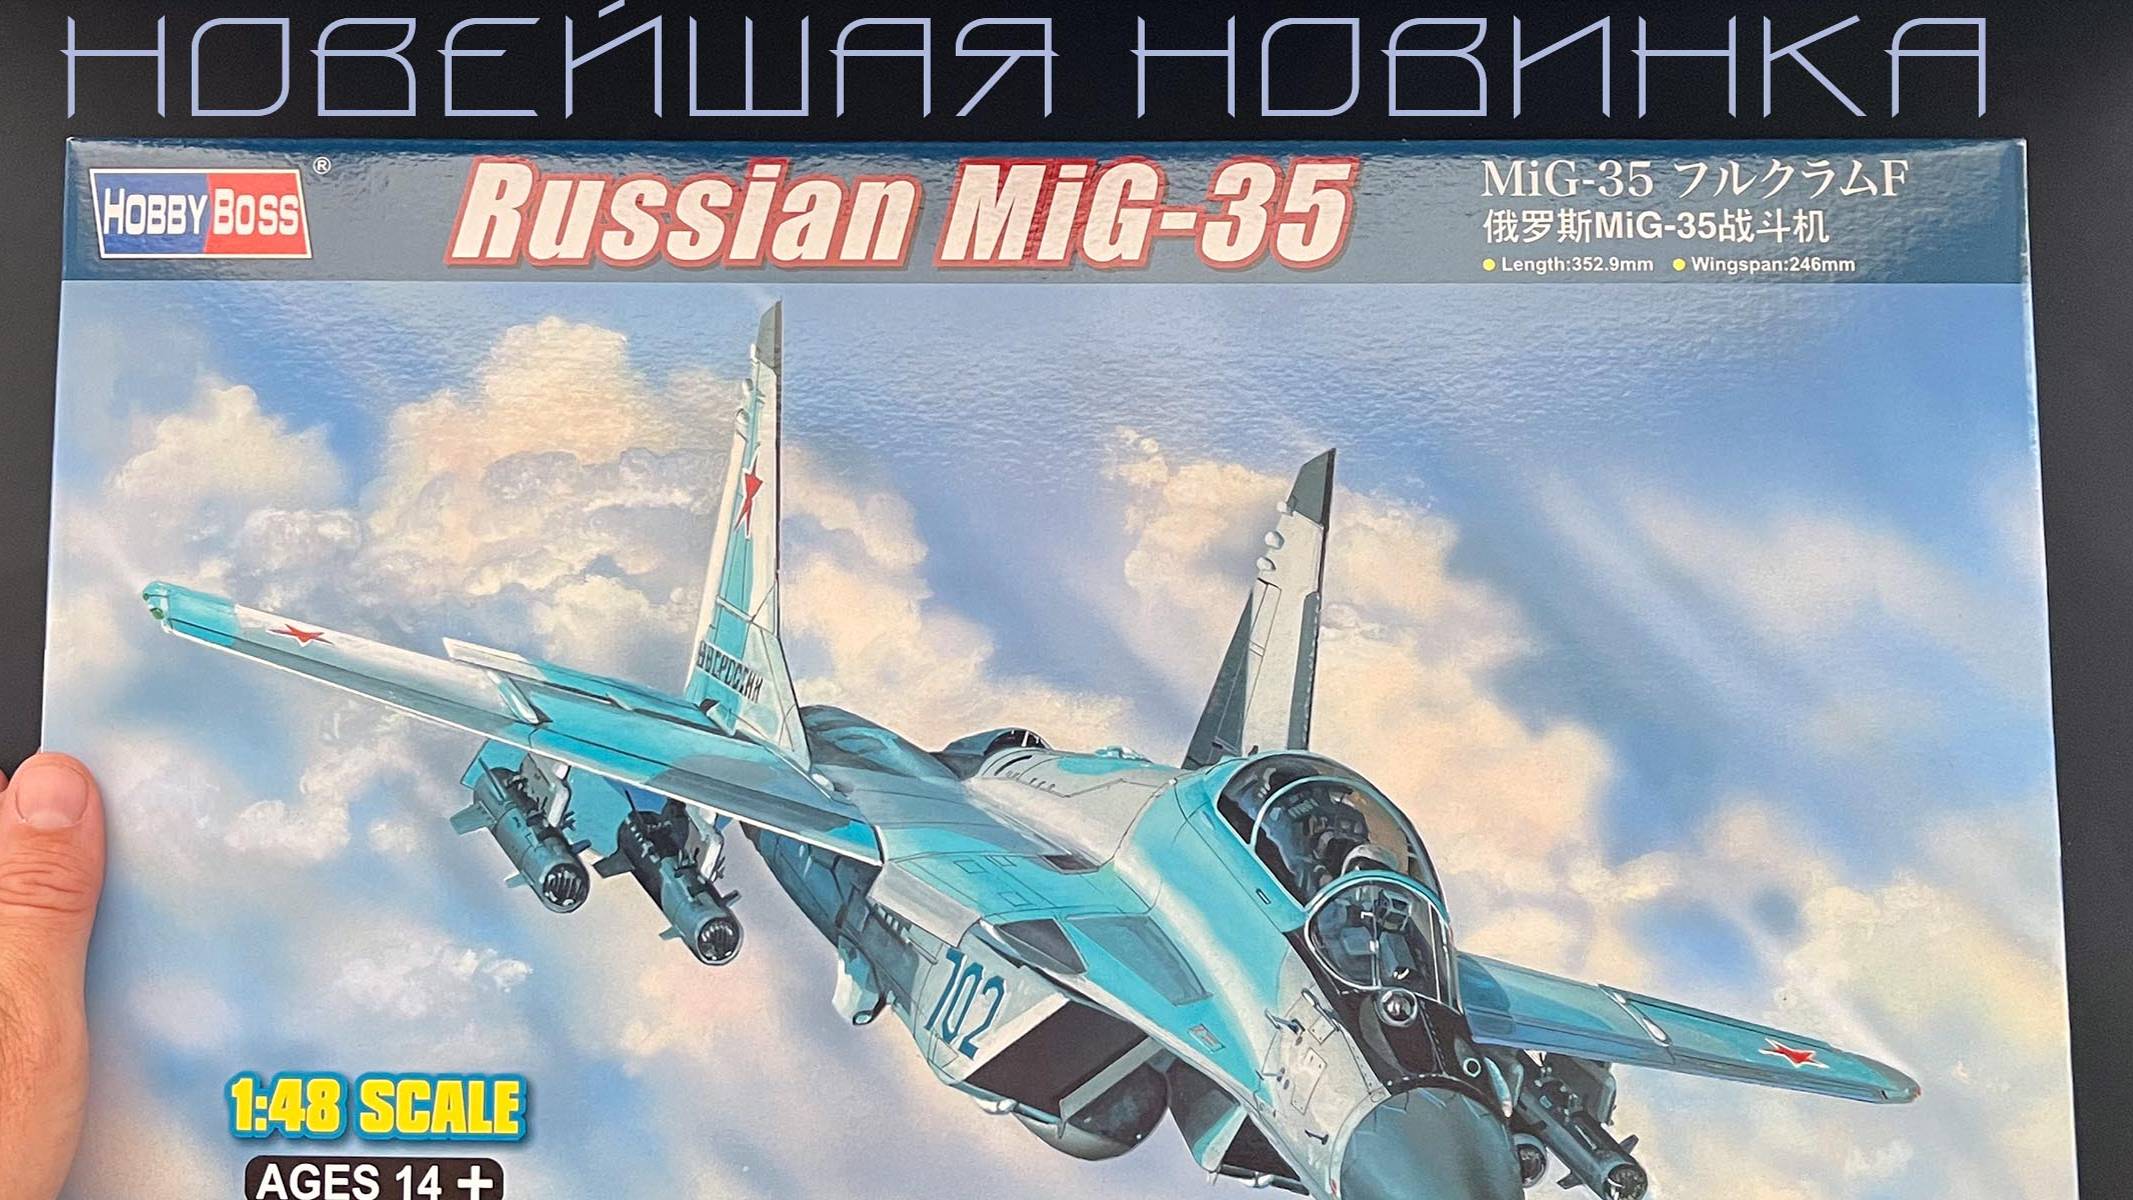 Новейшая новинка от фирмы Хобби Босс, российский легкий истребитель МиГ-35 в 48 масштабе.